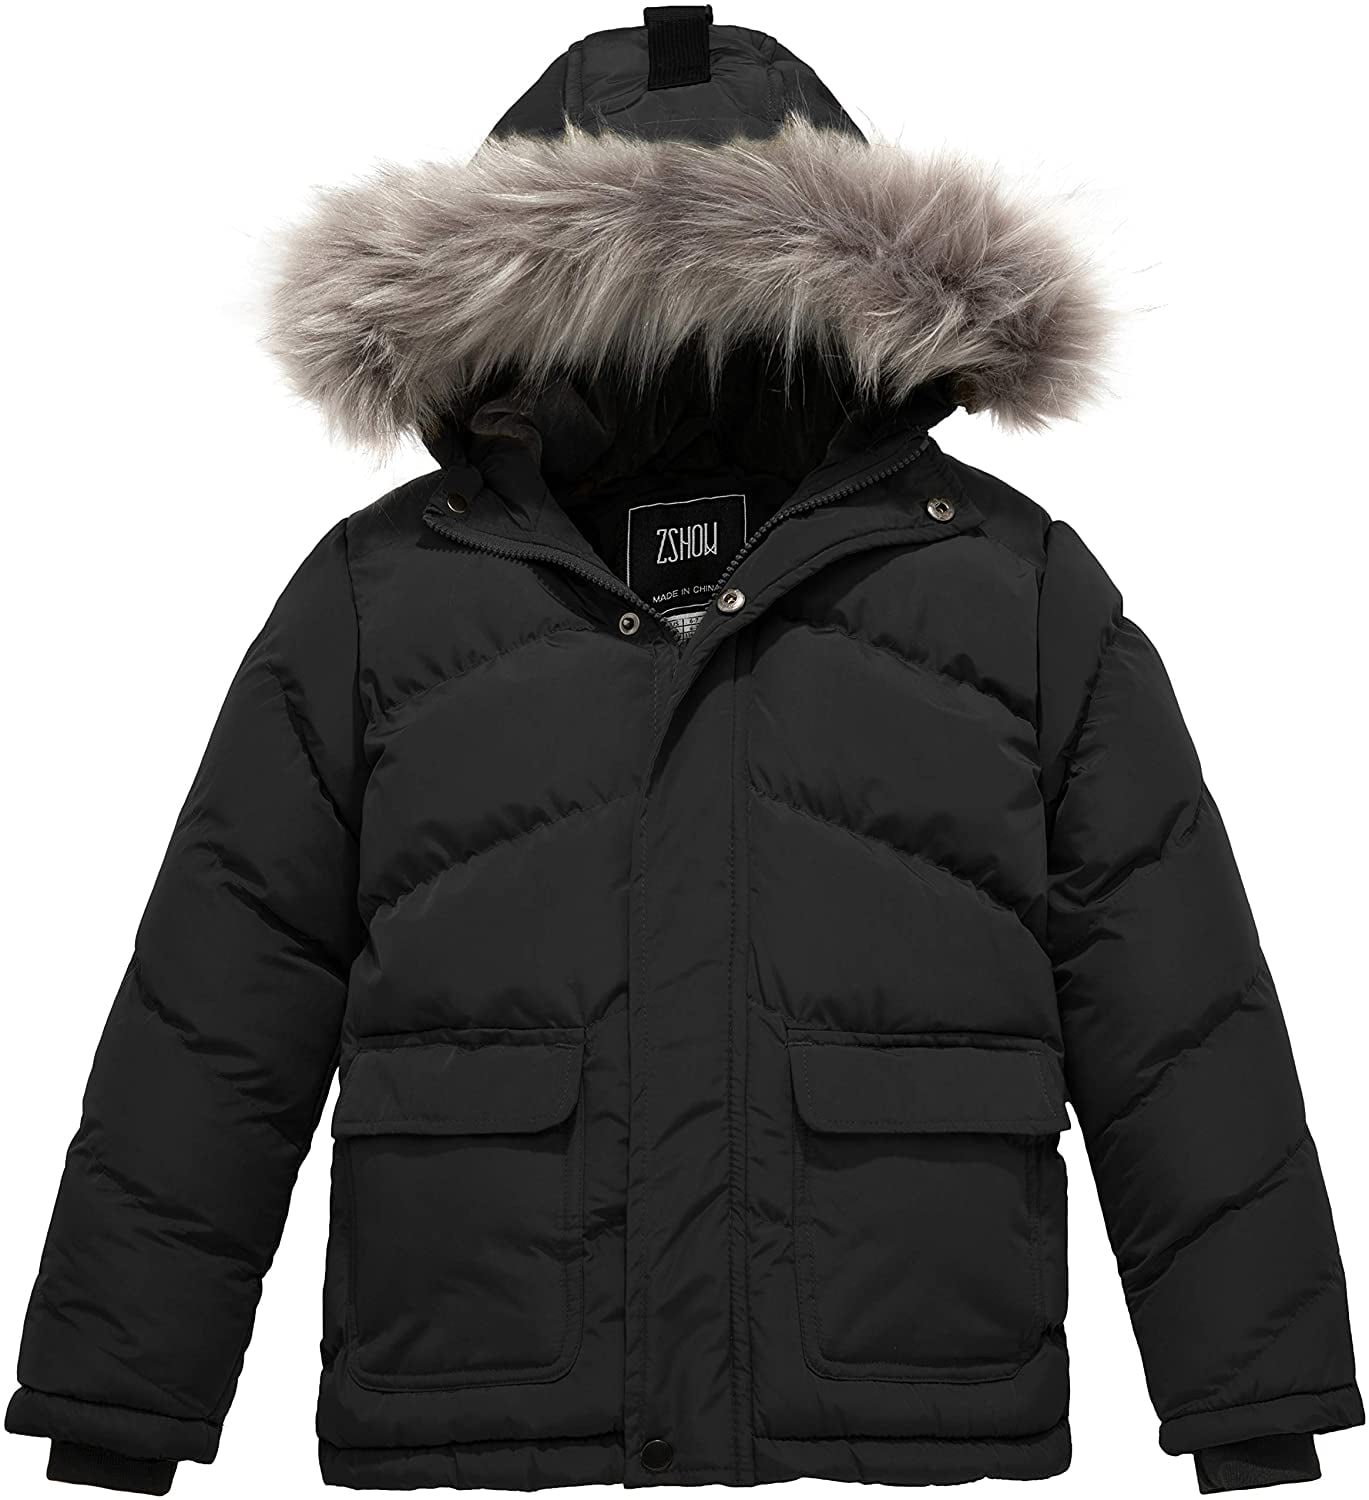 Boys' Puffer Jacket Warm Winter Coat Waterproof Hooded Outerwear ...